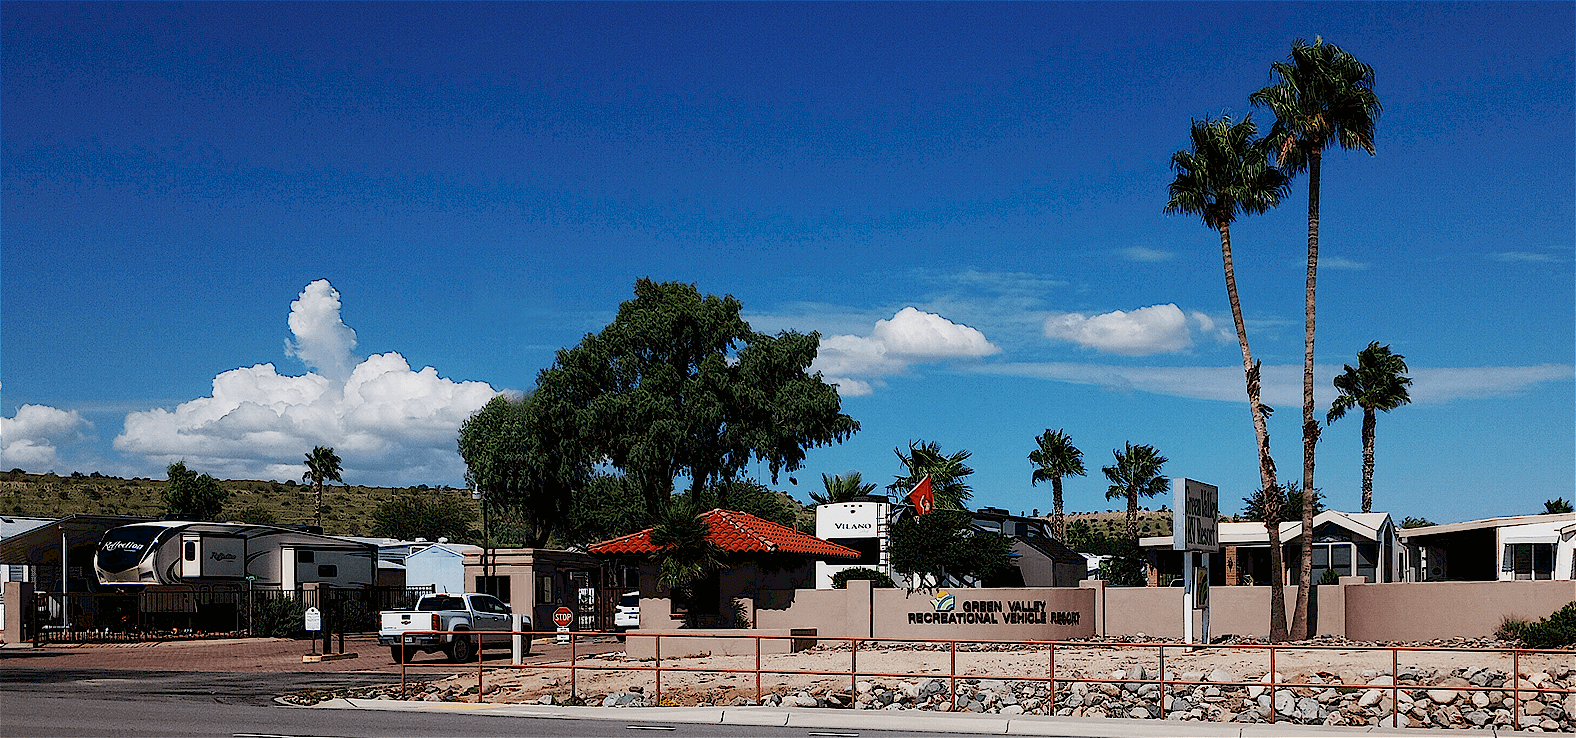 Green Valley Arizona RV Resort Main Gate